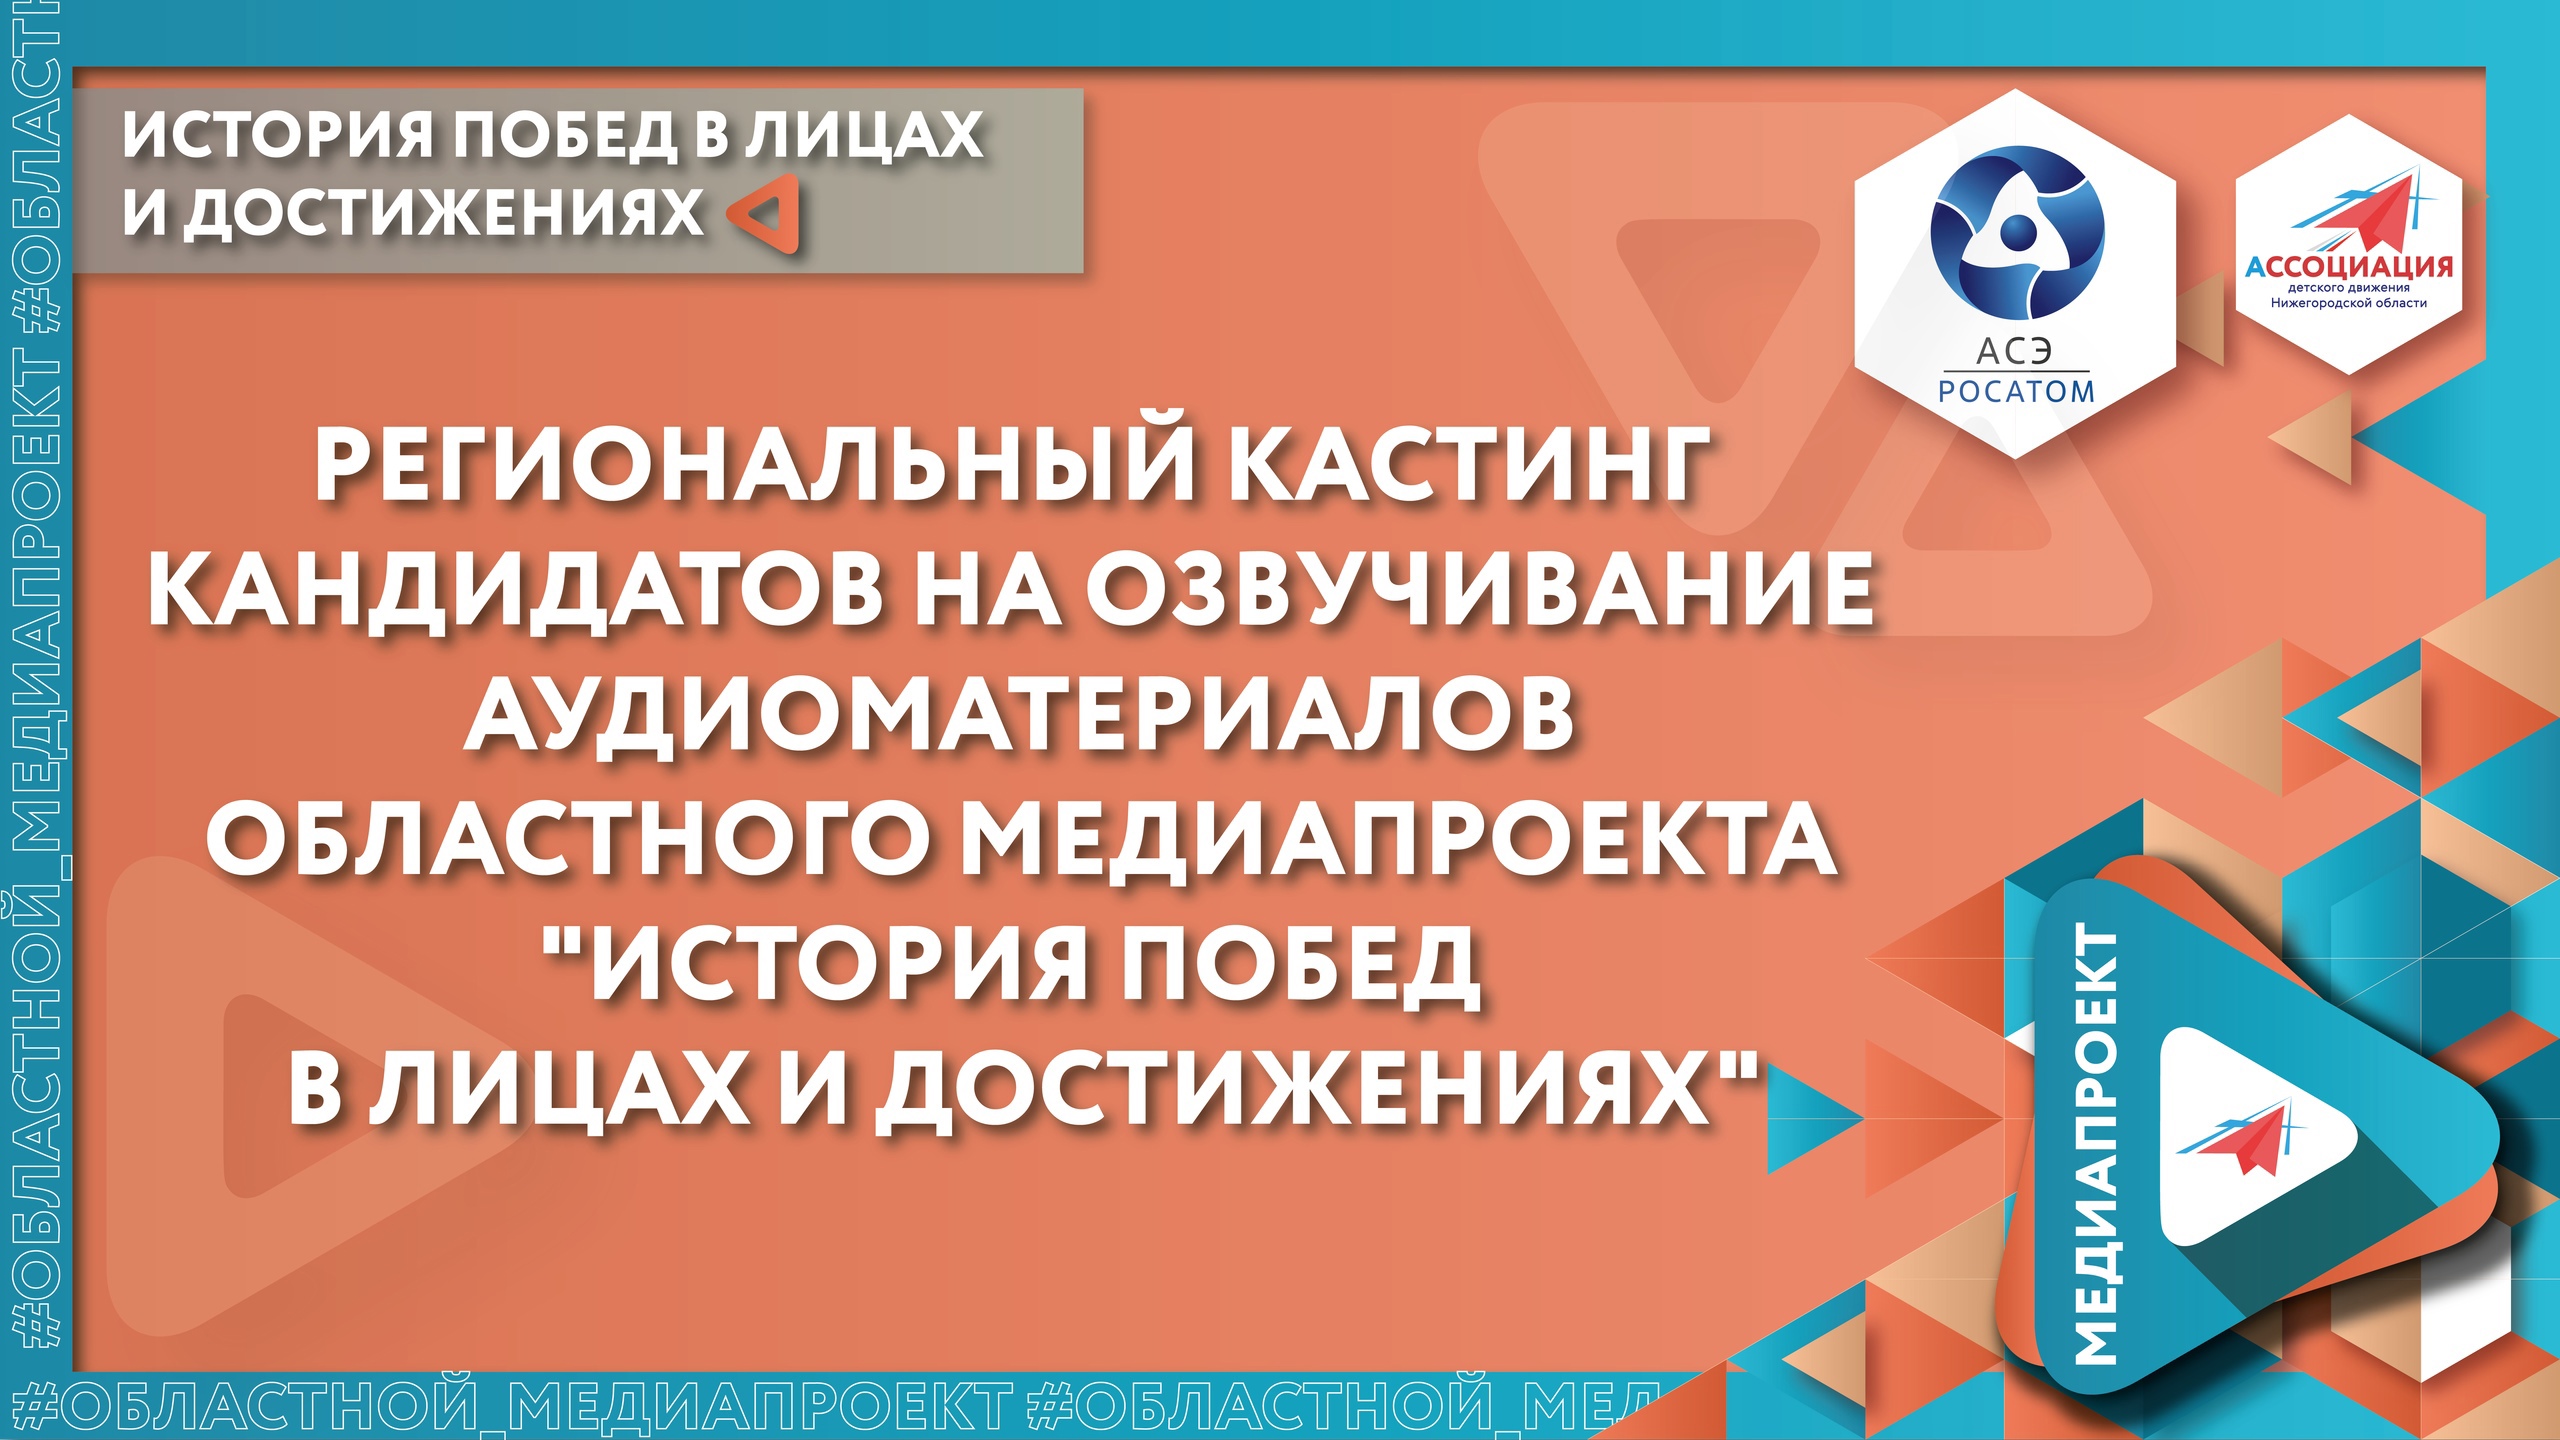 Кастинг областного медиапроекта «История побед в лицах и достижениях» в Нижегородской области продолжается!